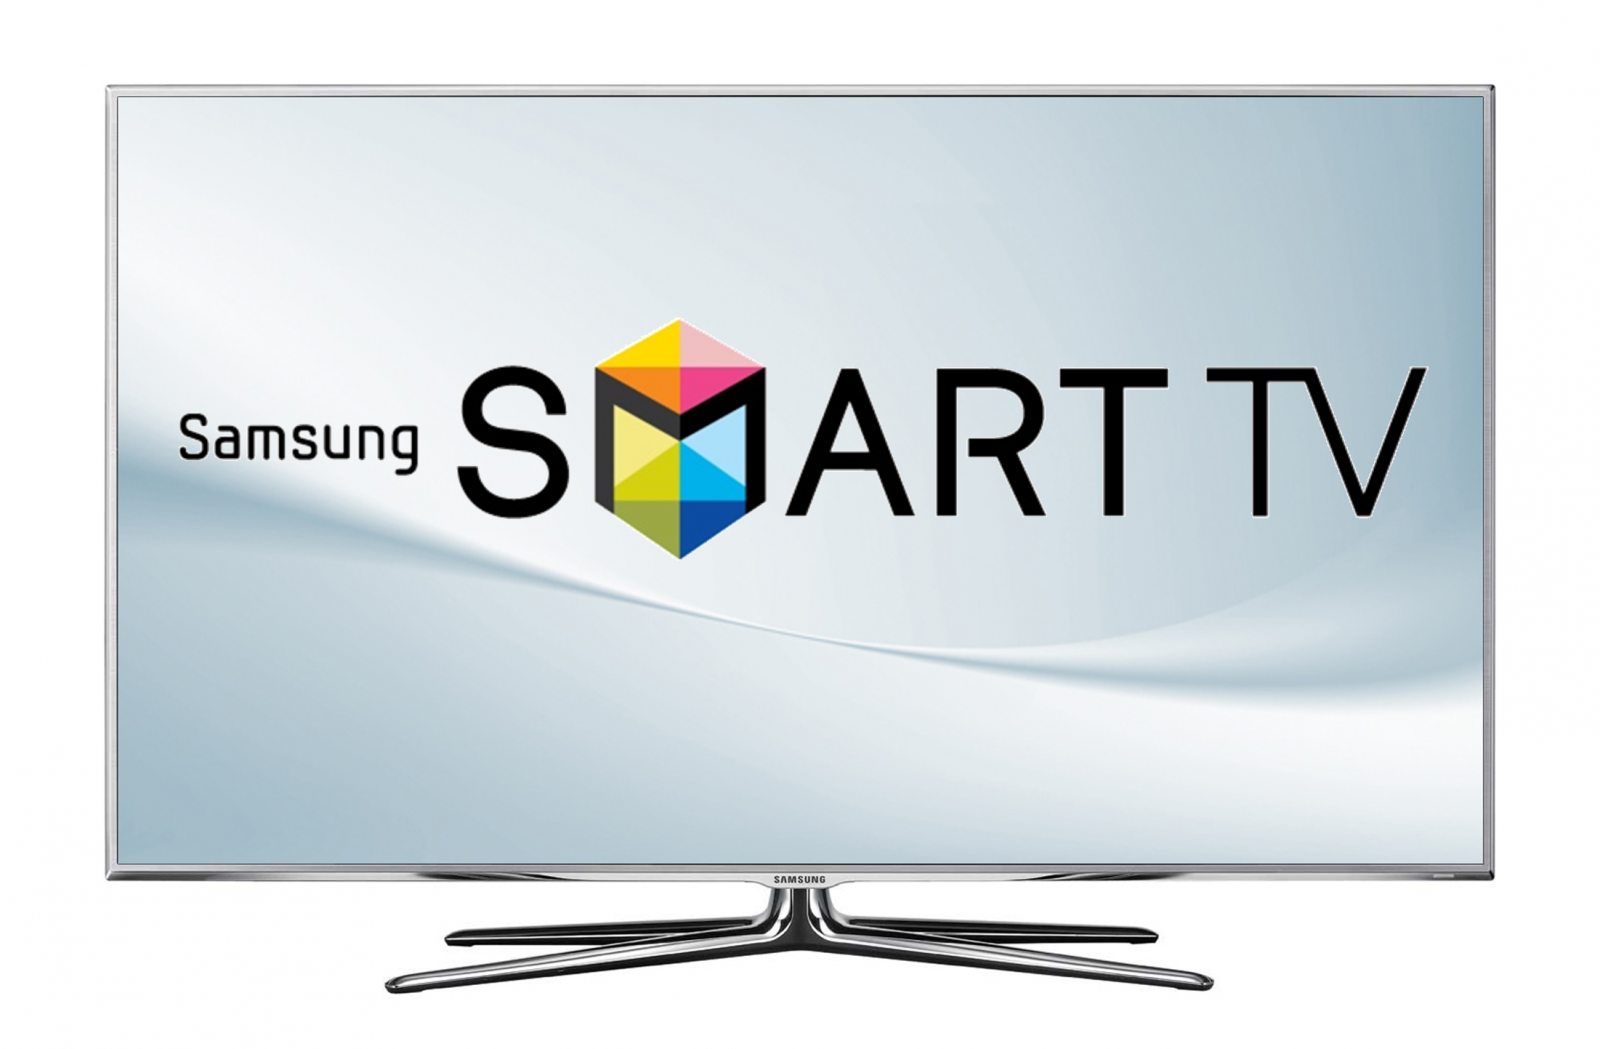 Khám phá tính năng độc đáo trên Smart tivi Samsung và nâng cao trải nghiệm giải trí của mình. Các tính năng mới nhất như Bixby, Home Dashboard và SmartThings sẽ giúp bạn dễ dàng quản lý các hoạt động trong gia đình, đồng thời giúp tối ưu hóa trải nghiệm giải trí của bạn.